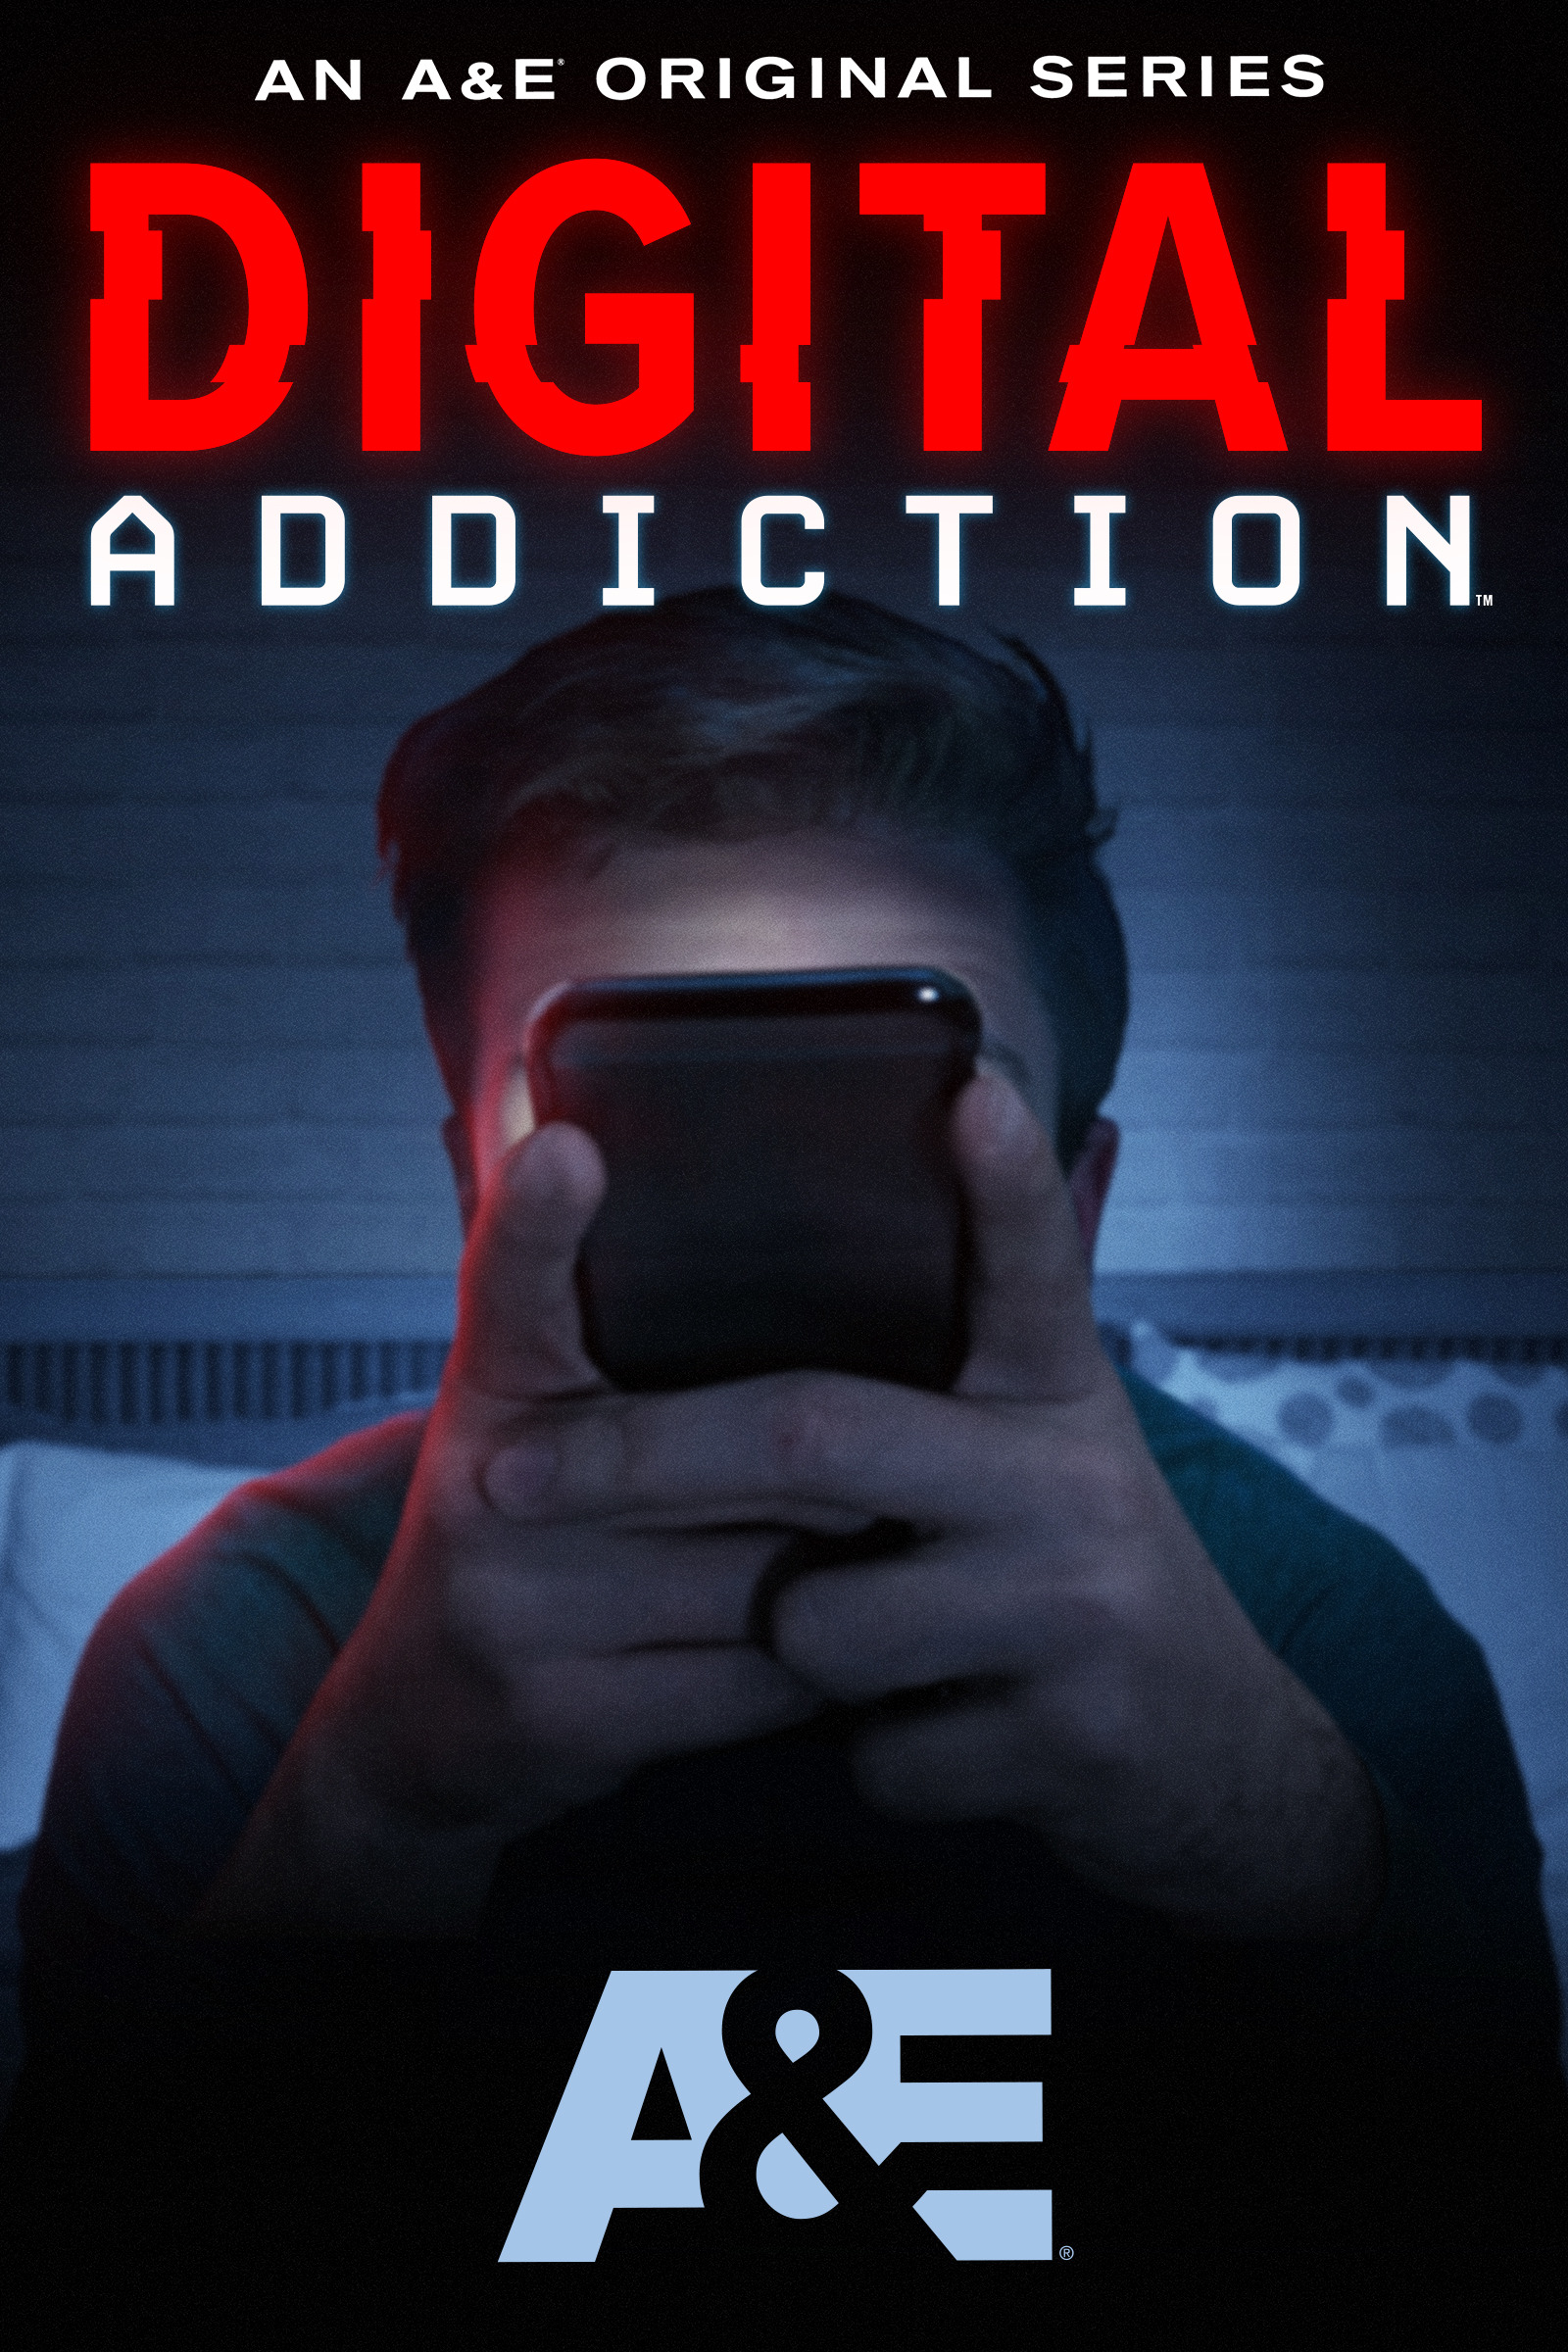 Mega Sized TV Poster Image for Digital Addiction 